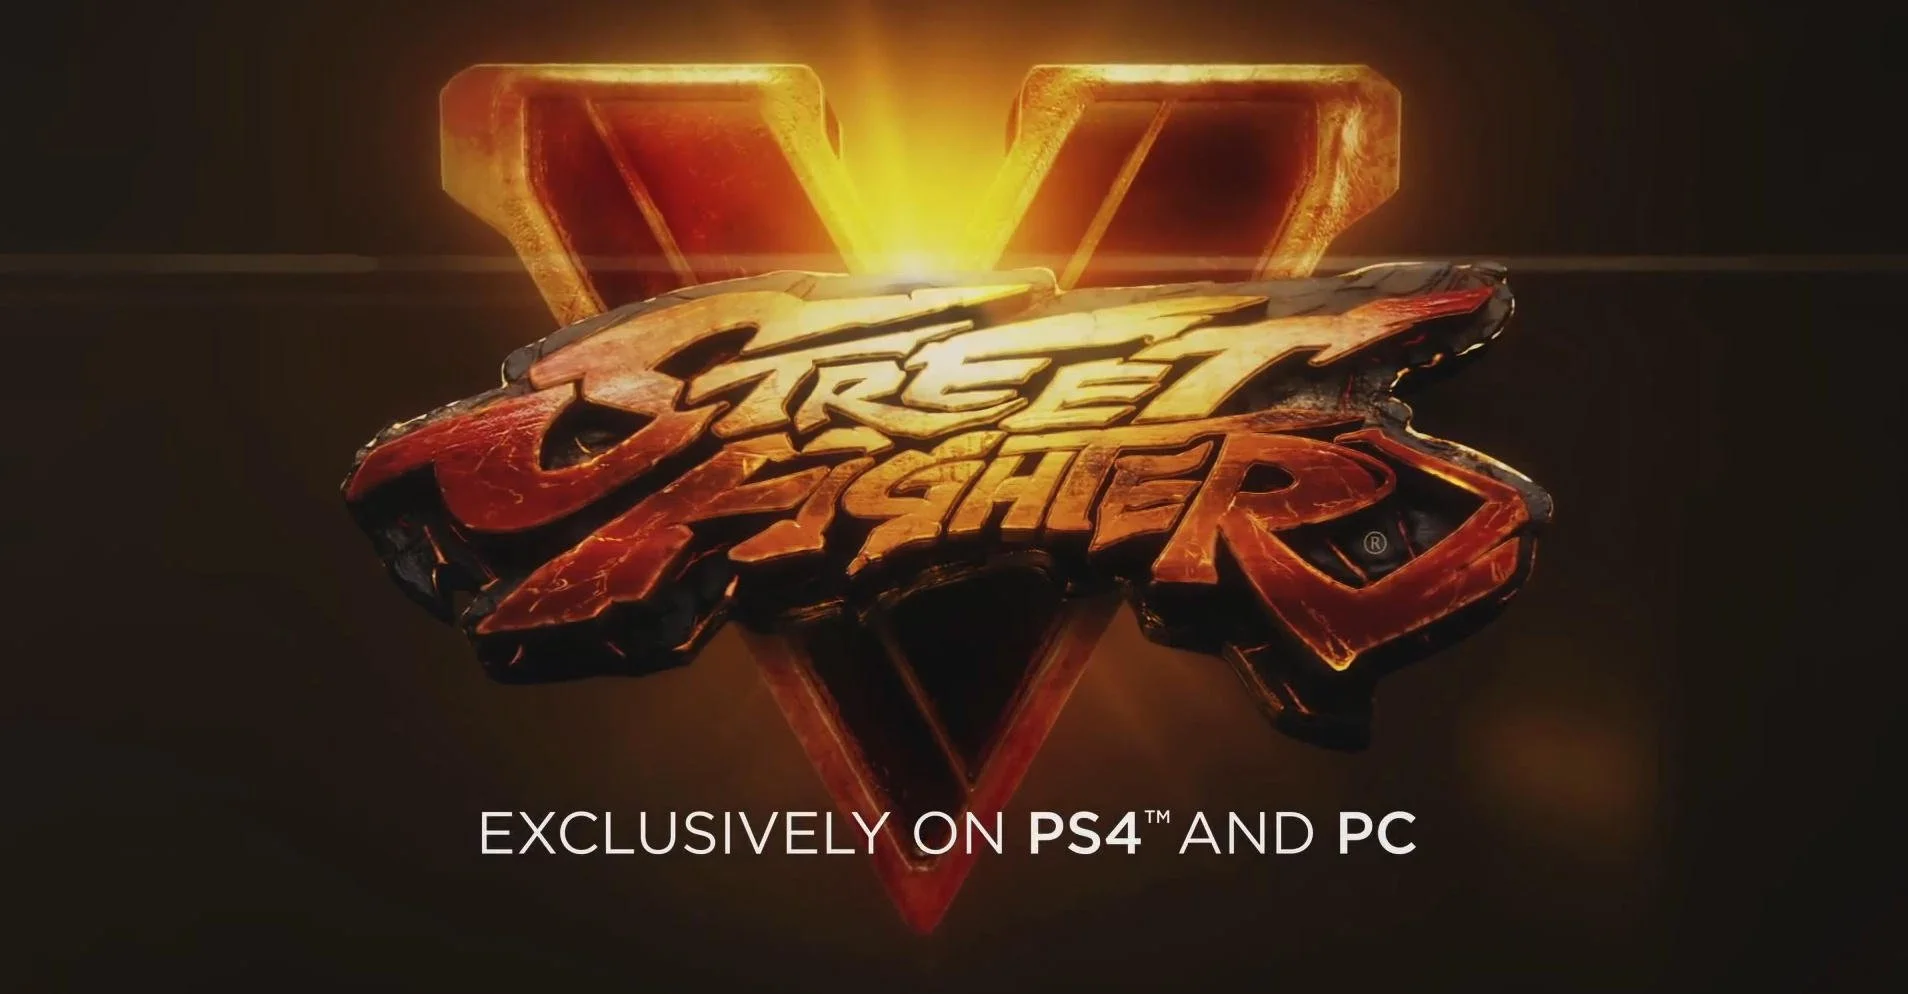 Street Fighter 5 появится только на PS4 и PC - фото 1